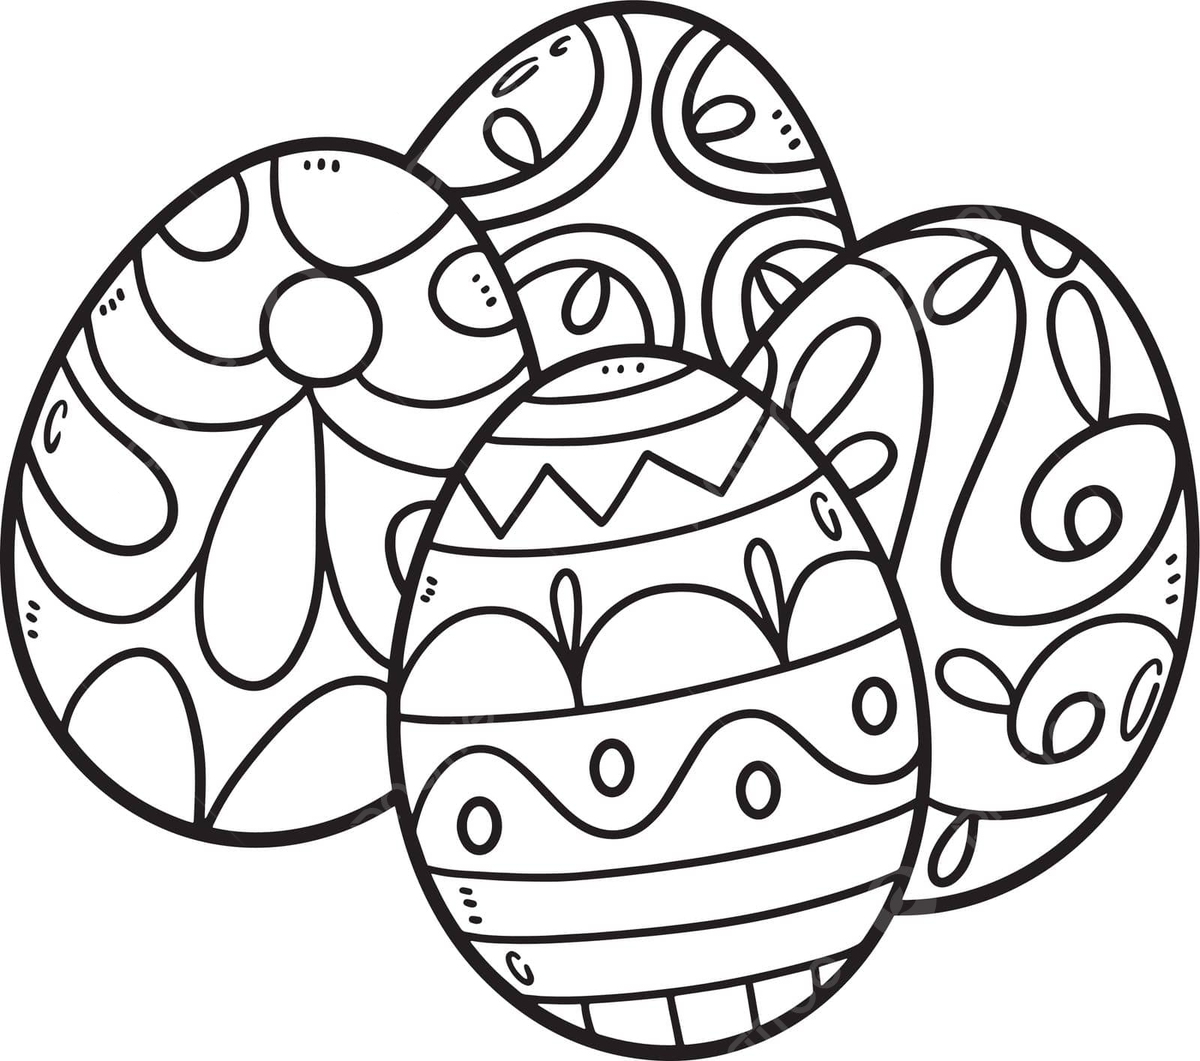 Dibujo de pãgina para colorear huevos pascua niãos juego cuatro aislados vector png dibujos dibujo de huevo dibujo de huevo de pascua dibujo de anillo png y vector para dcargar gratis